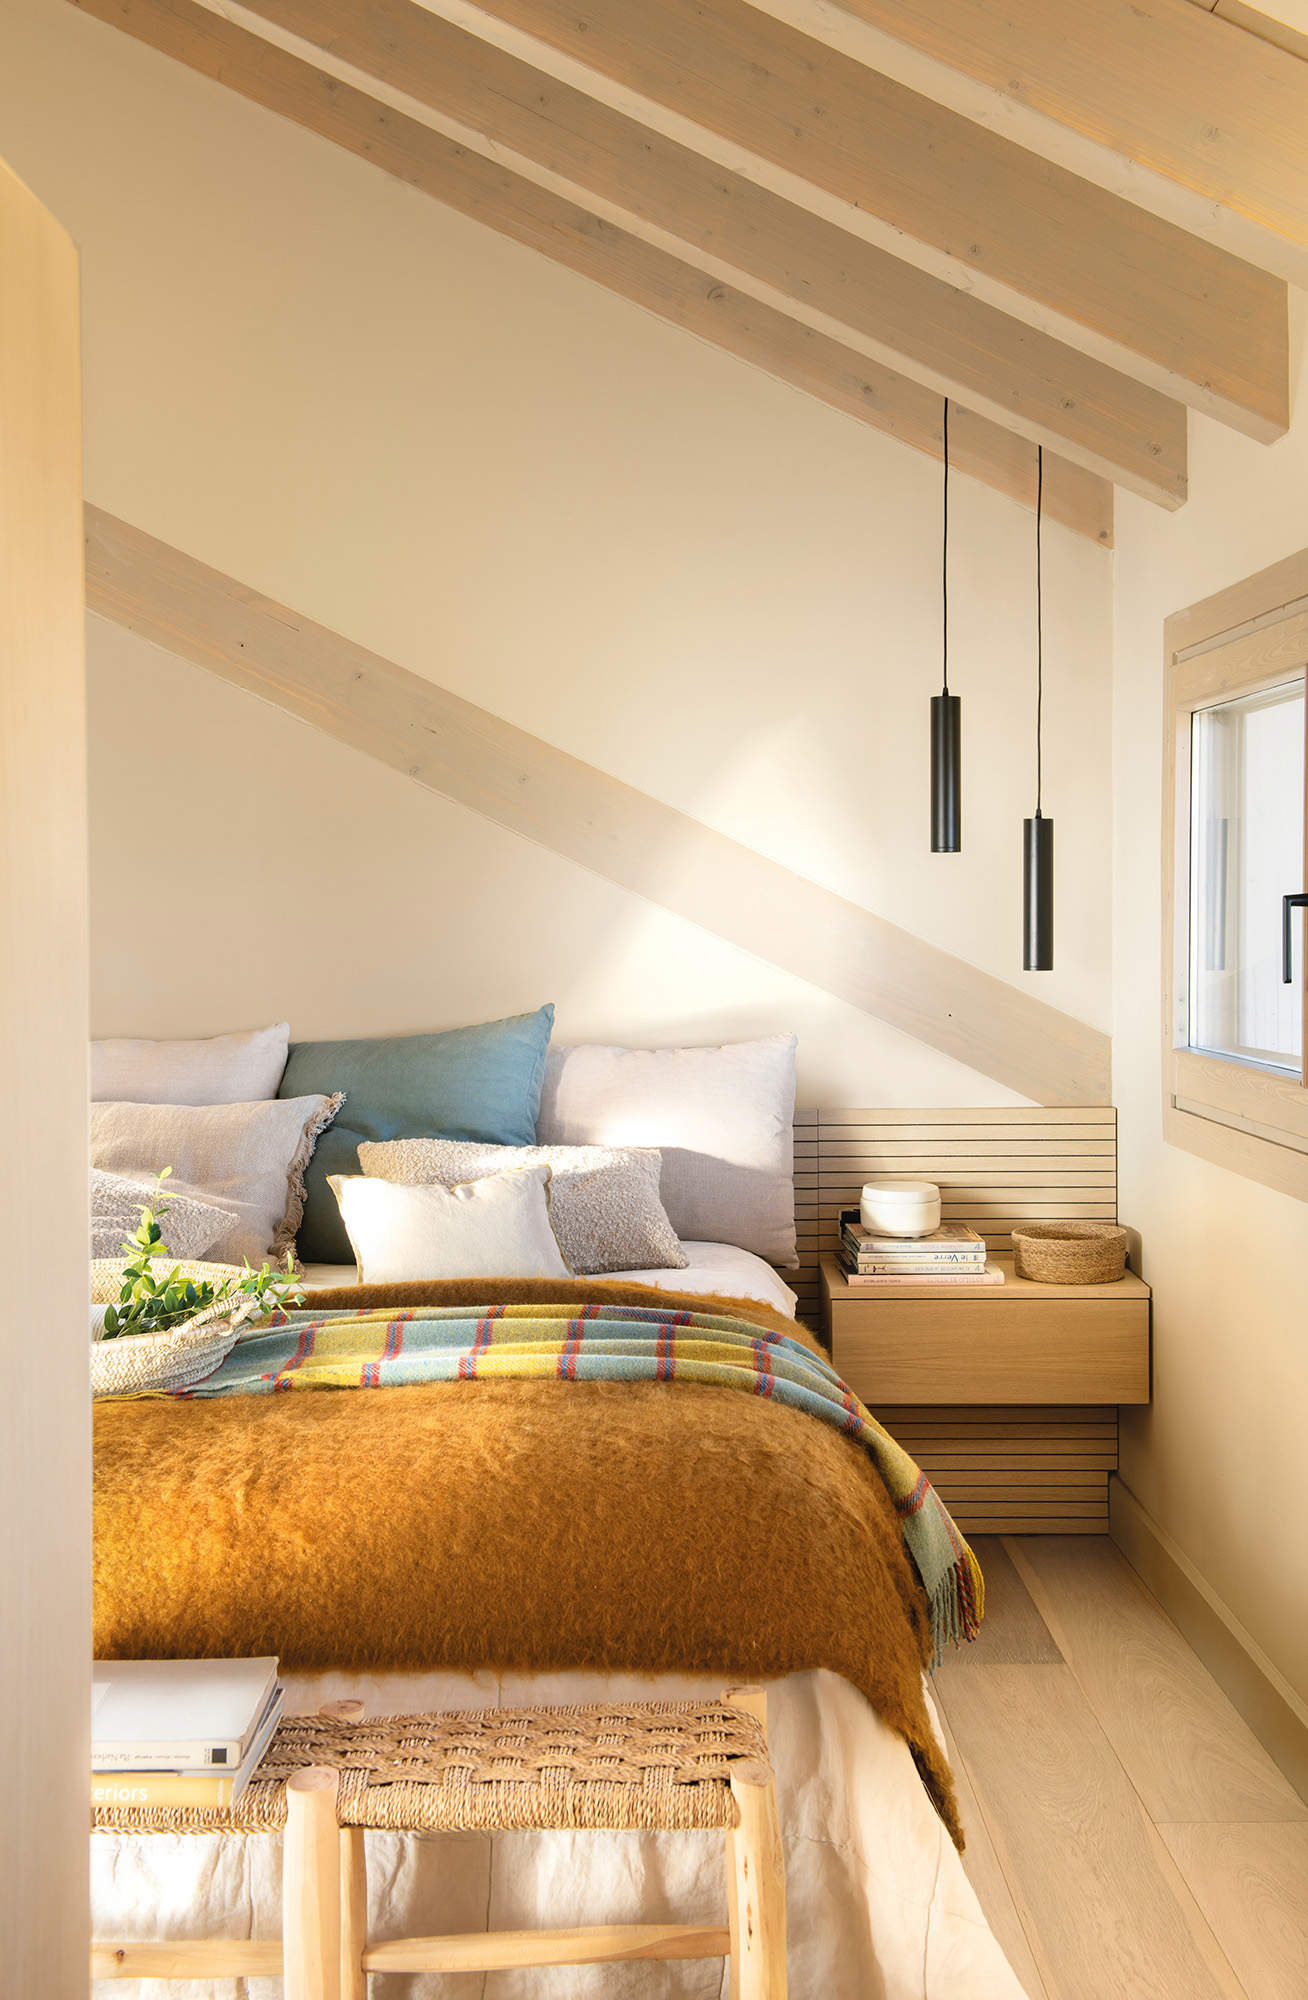 Dormitorio pequeño y abuhardillado con cabecero alistonado, mesillas voladas y lámparas suspendidas tubulares